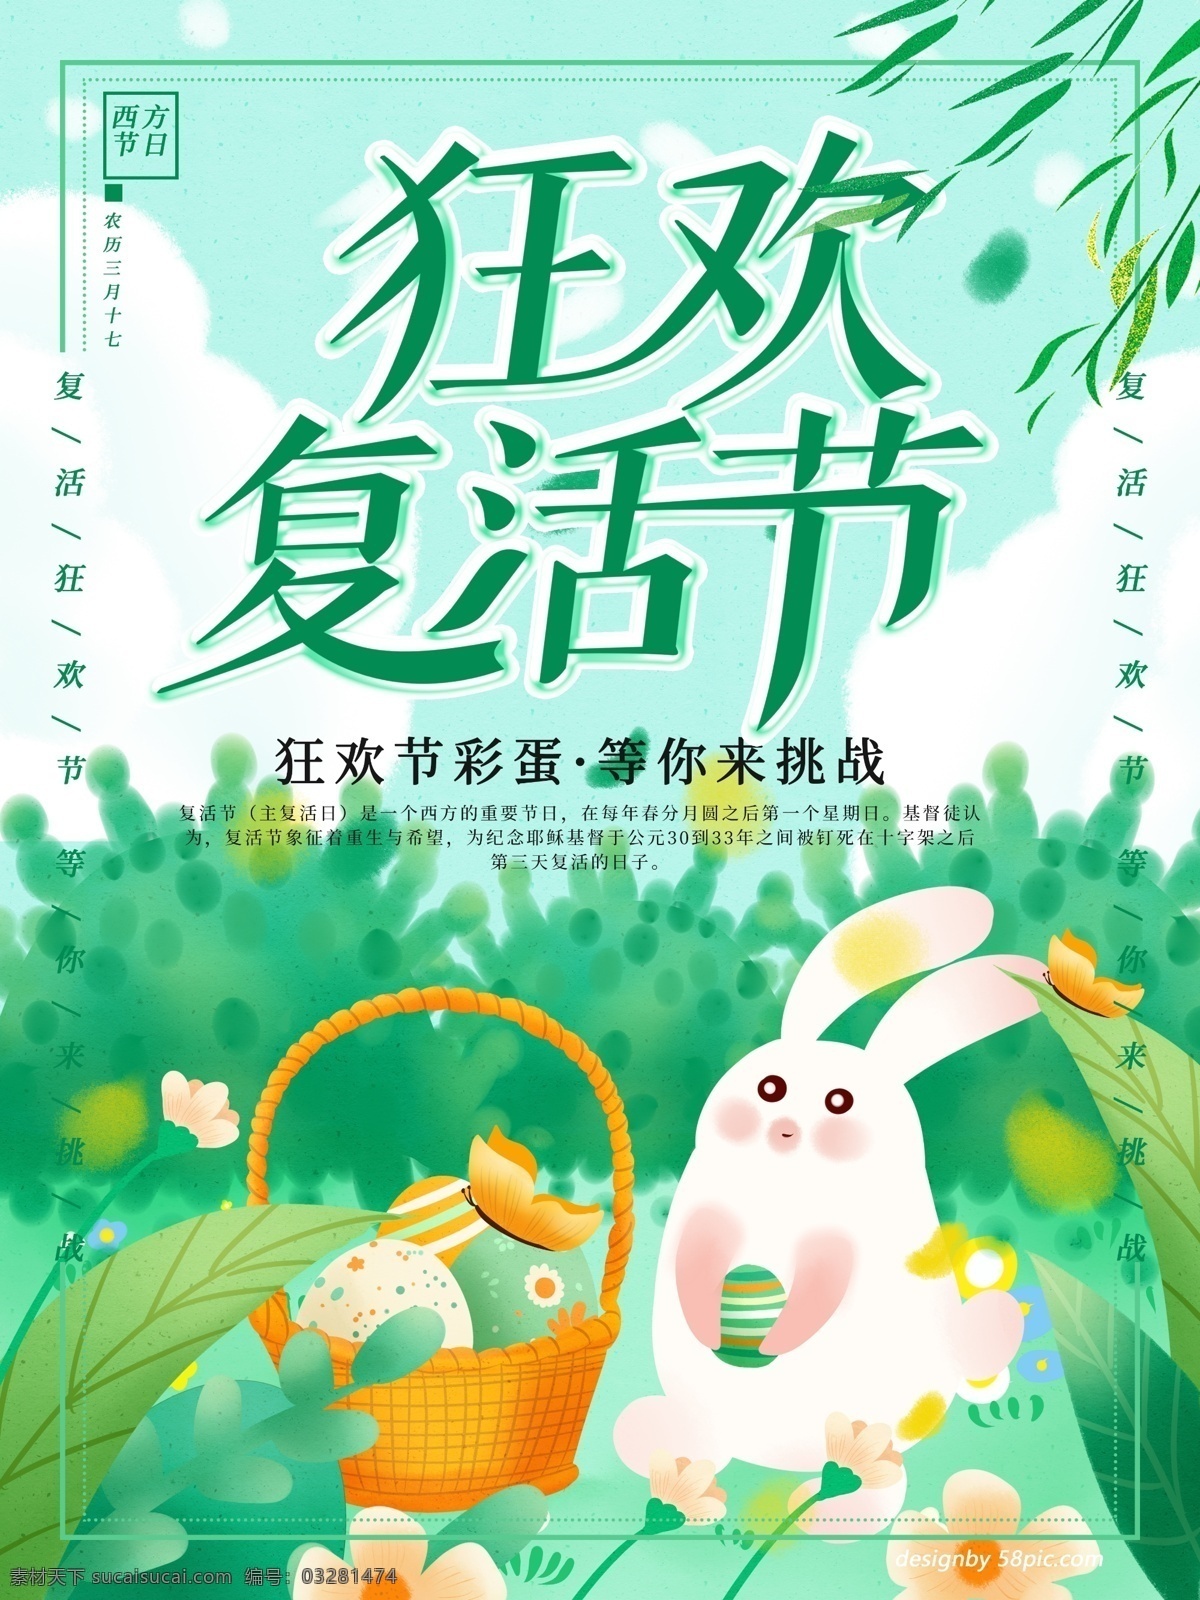 原创 手绘 狂欢 复活节 海报 狂欢复活节 小兔子 复活节彩蛋 彩蛋 手绘兔子 手绘植物 简约版海报